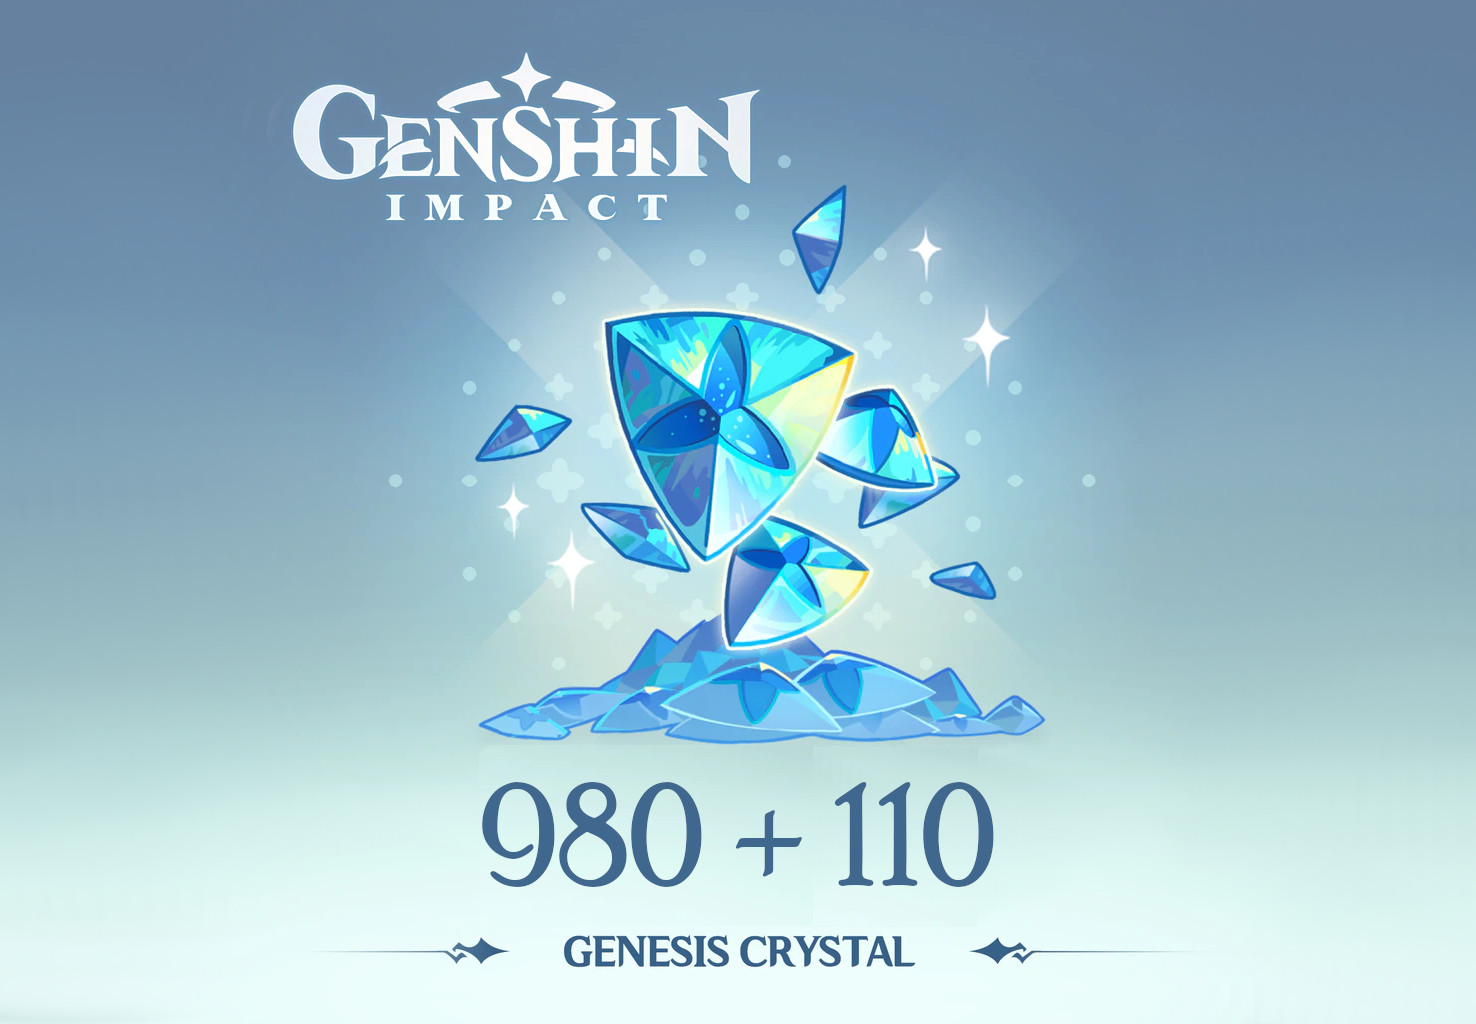 Genshin Impact - 980 + 110 Genesis Crystals Reidos Voucher, 17.23 usd